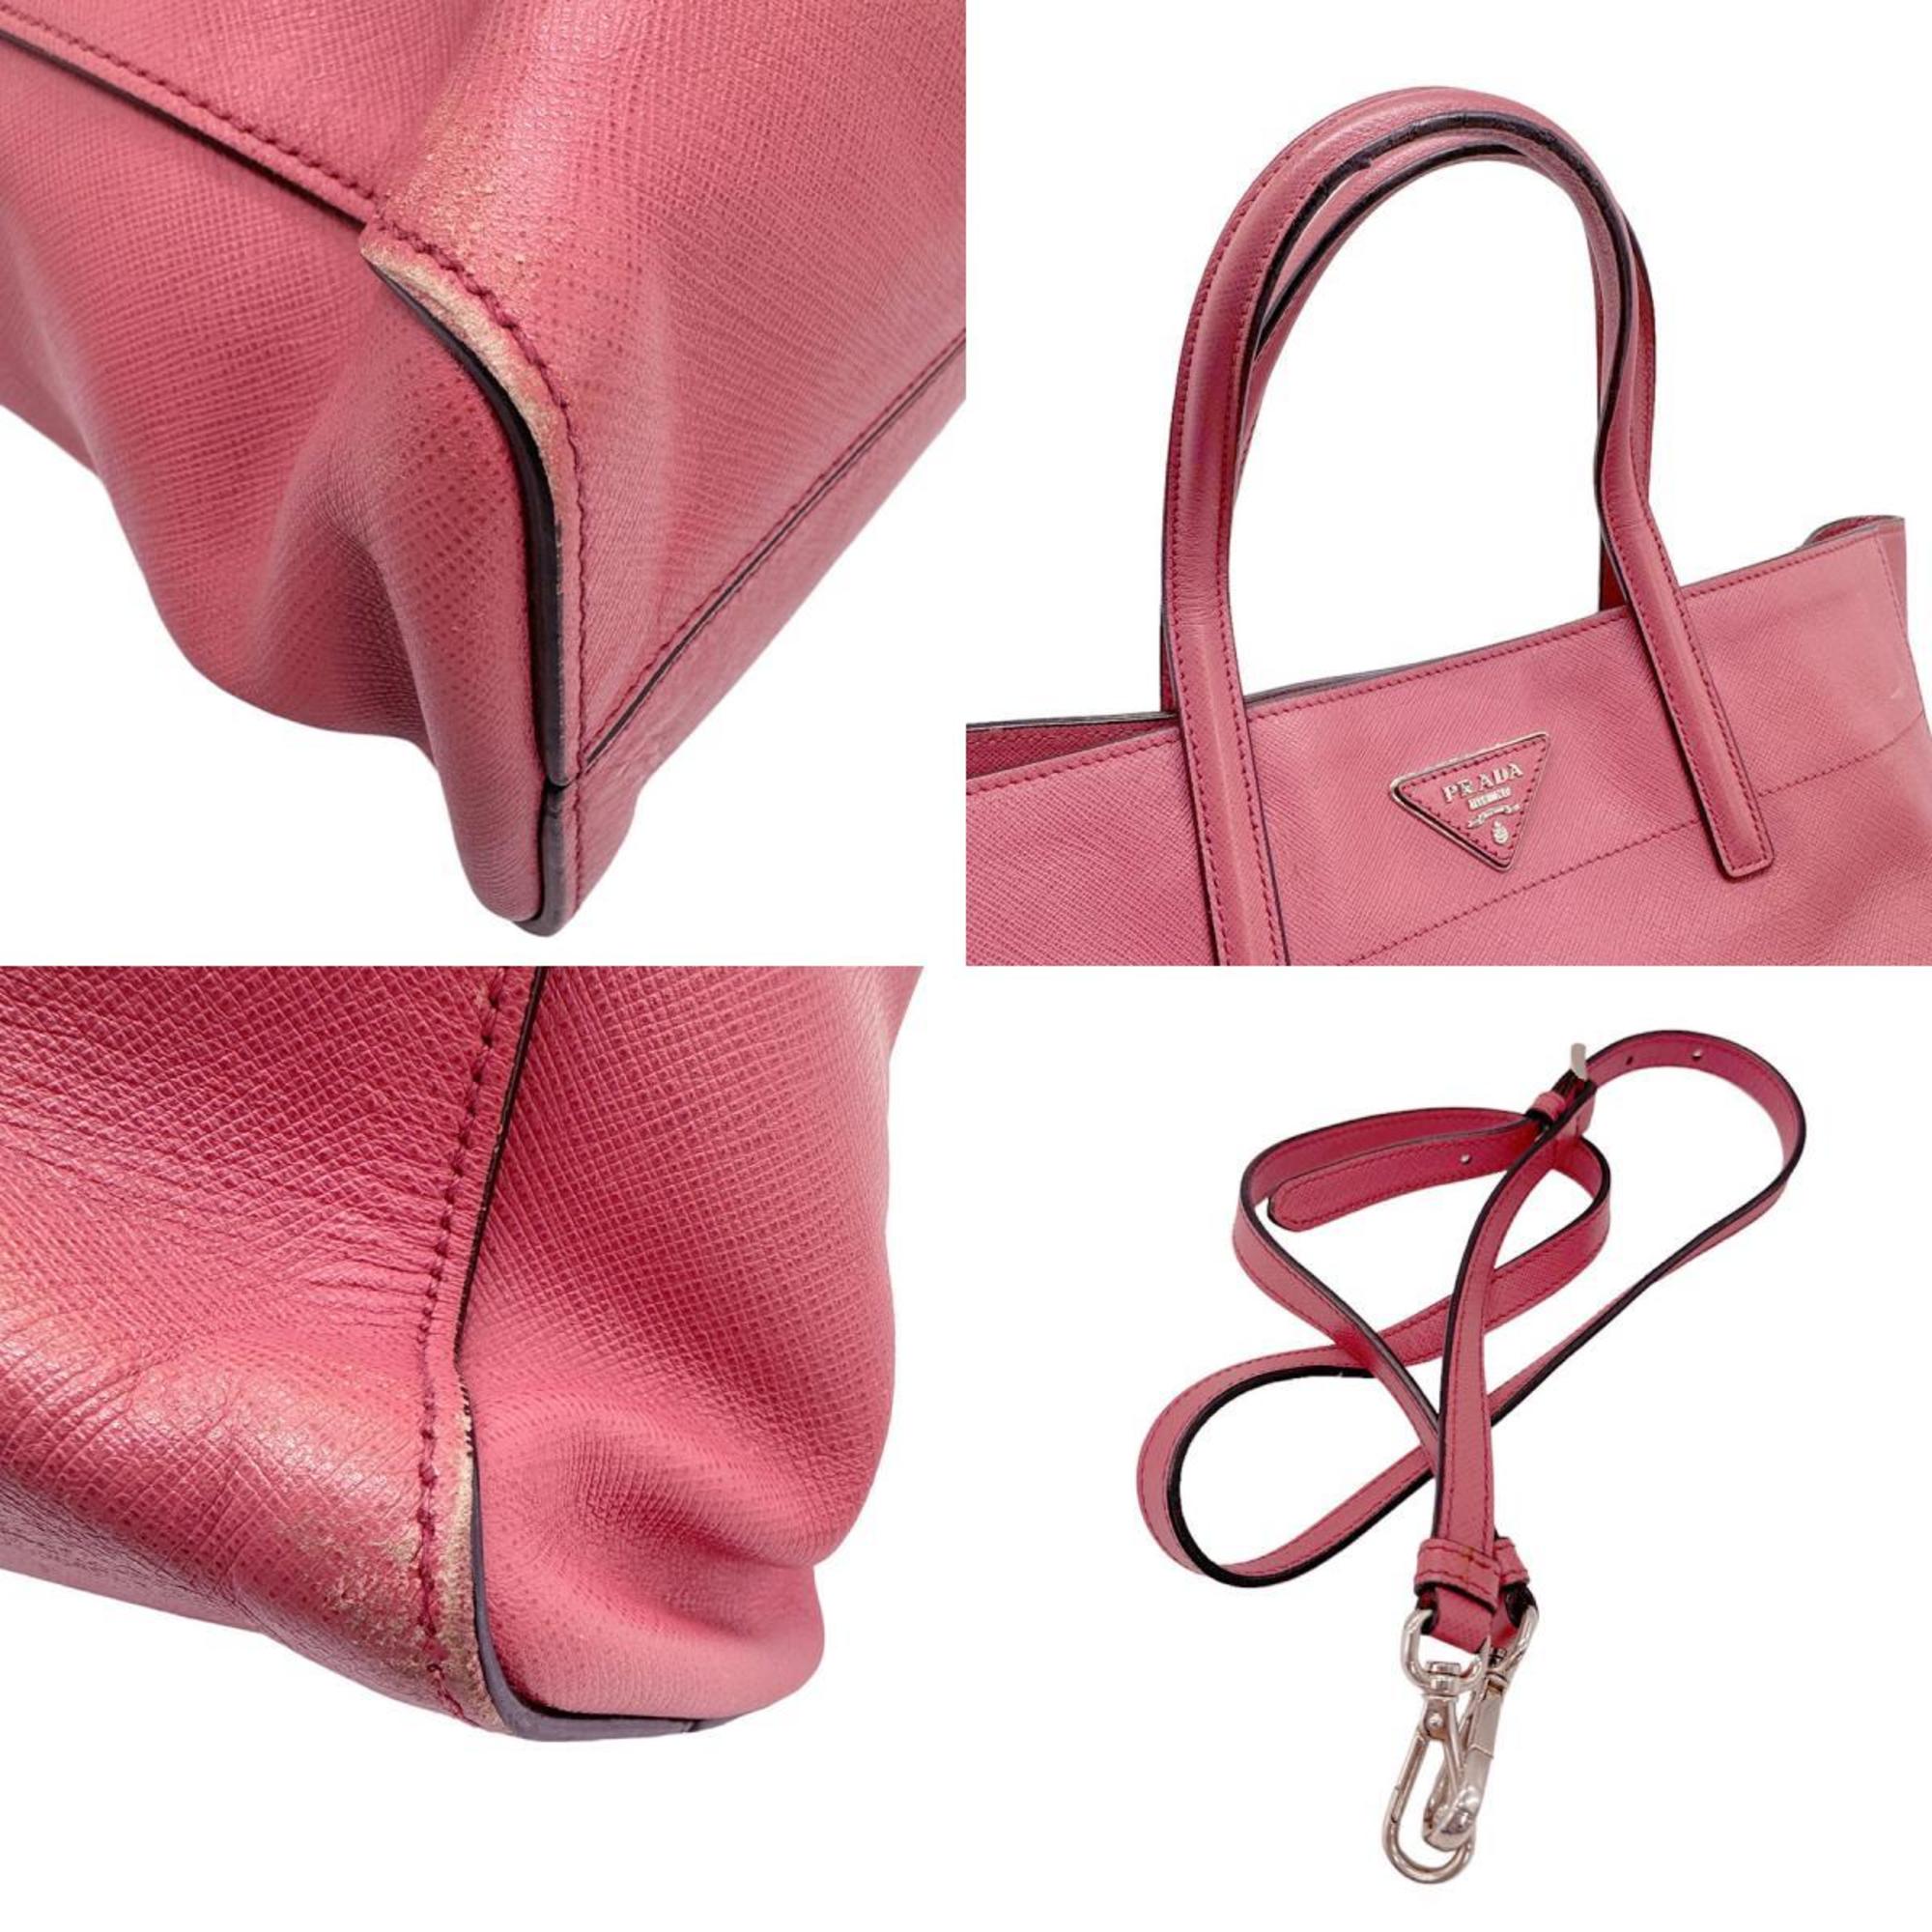 PRADA handbag shoulder bag leather pink ladies z0690